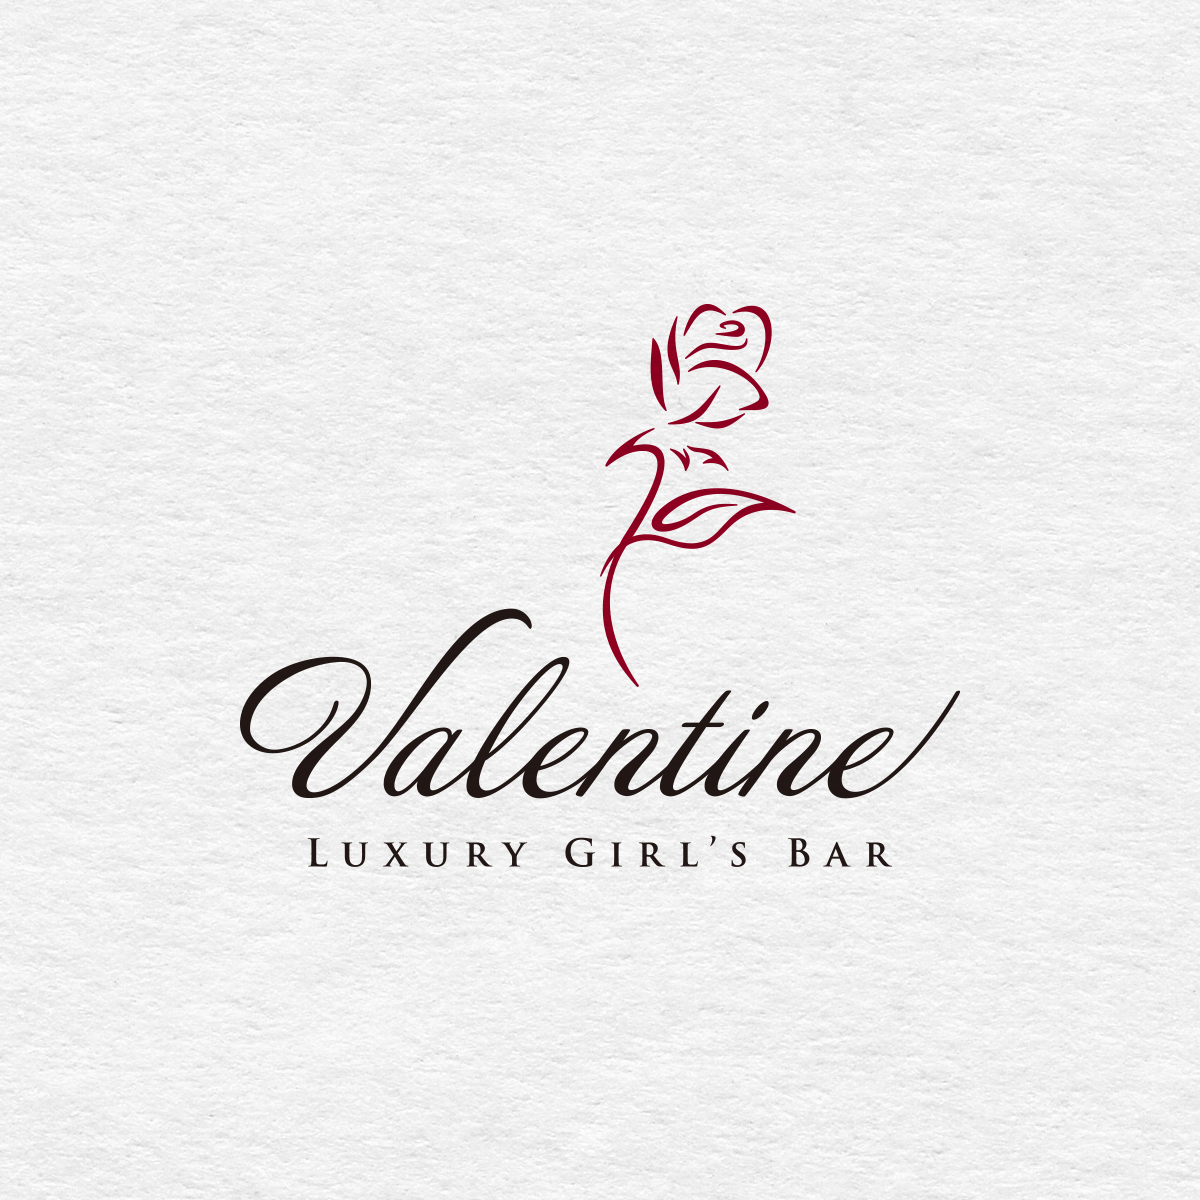 Valentine Luxury Girl's Bar